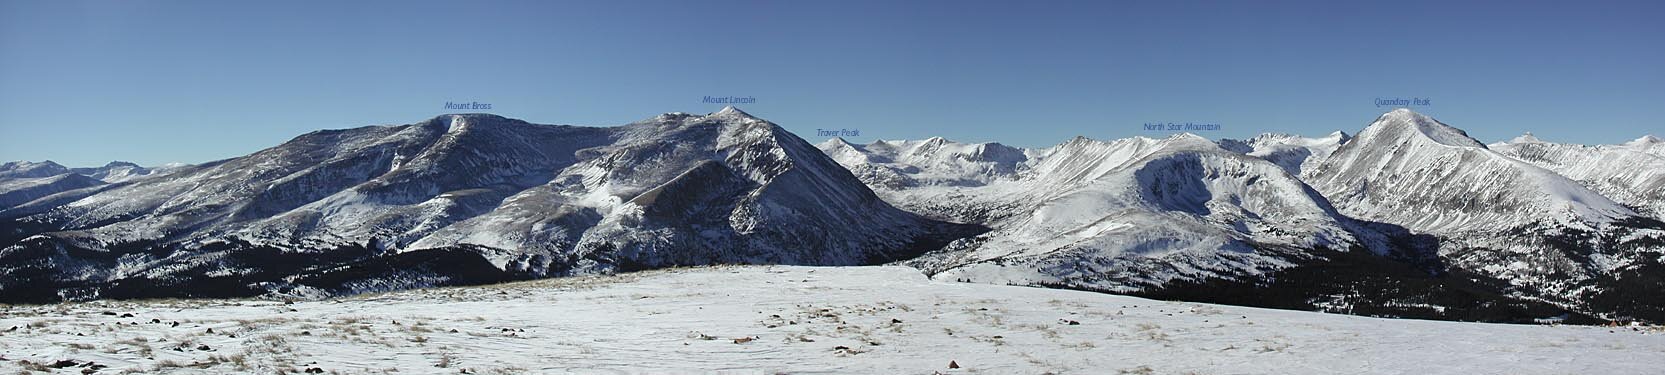 La Plata summit view